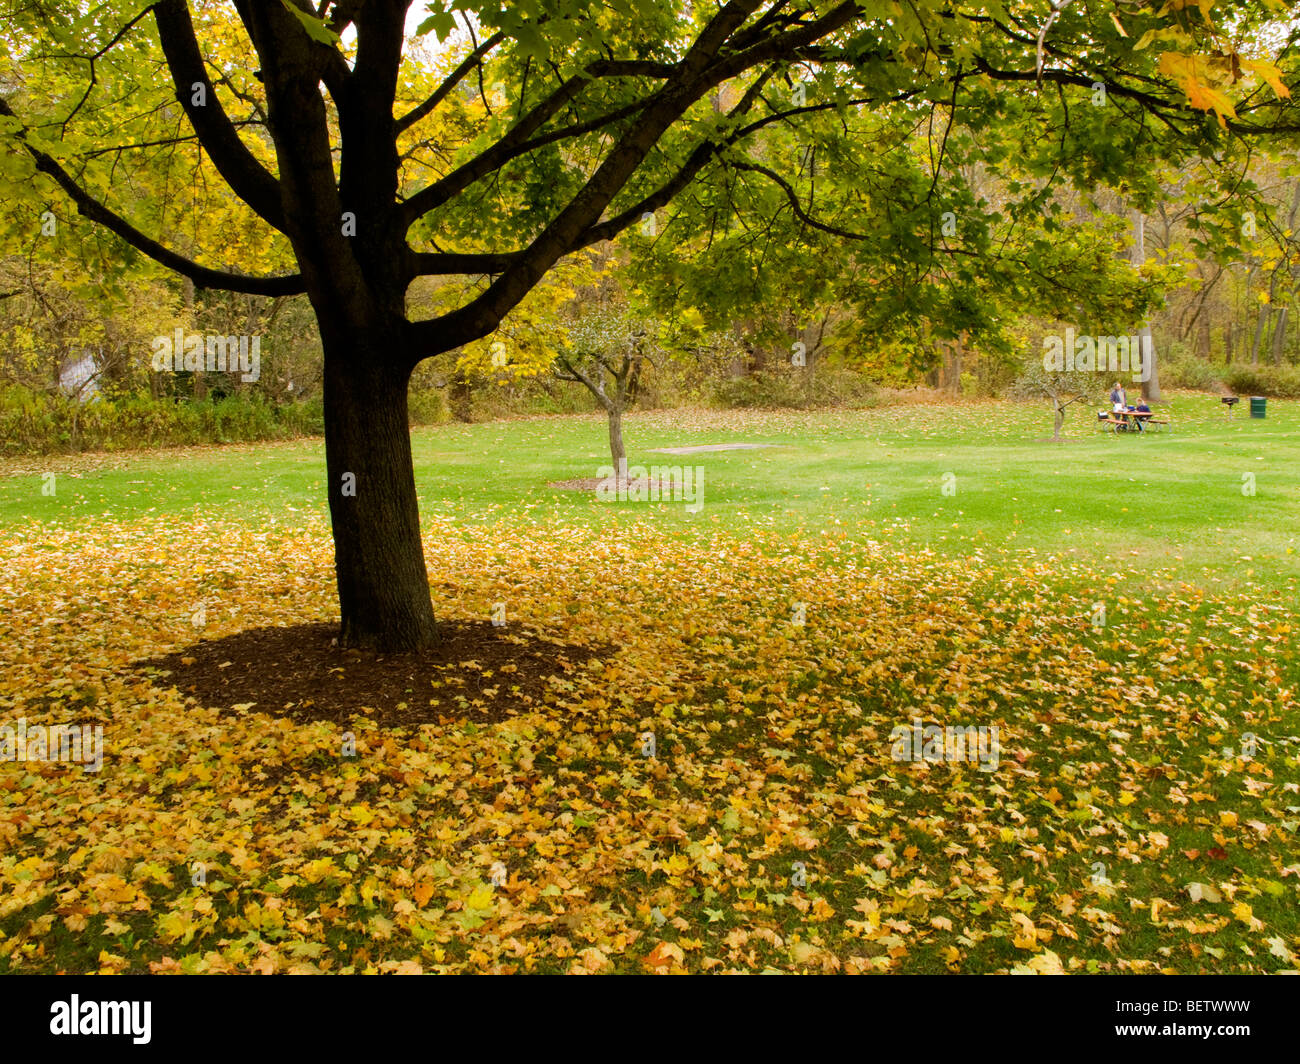 Autumn scene. Stock Photo